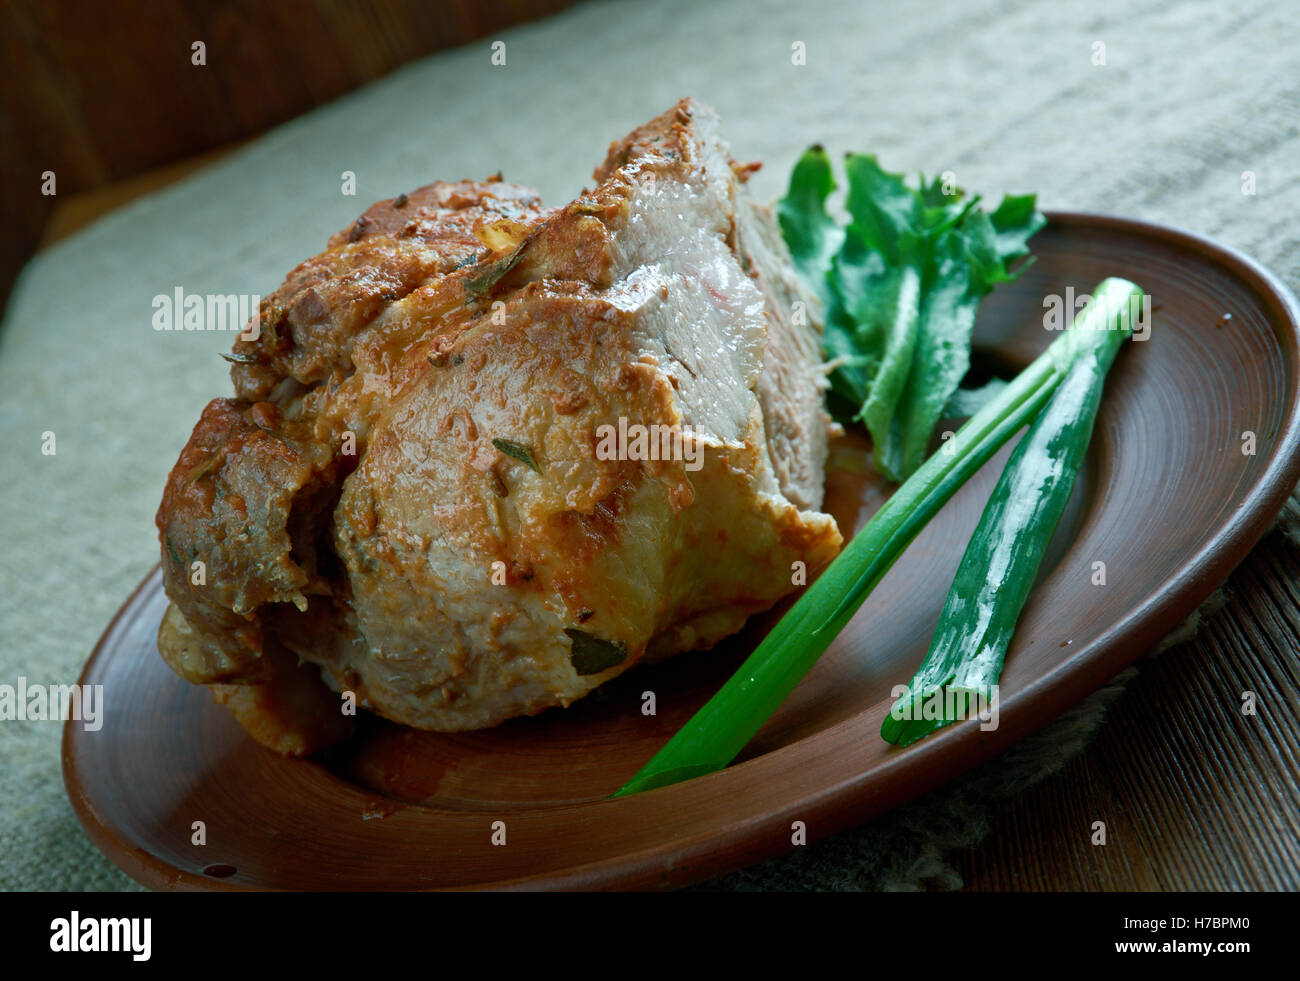 Kumpis - jambon cuit de porc lituanienne.l'ancien fond de bois, selective focus Banque D'Images